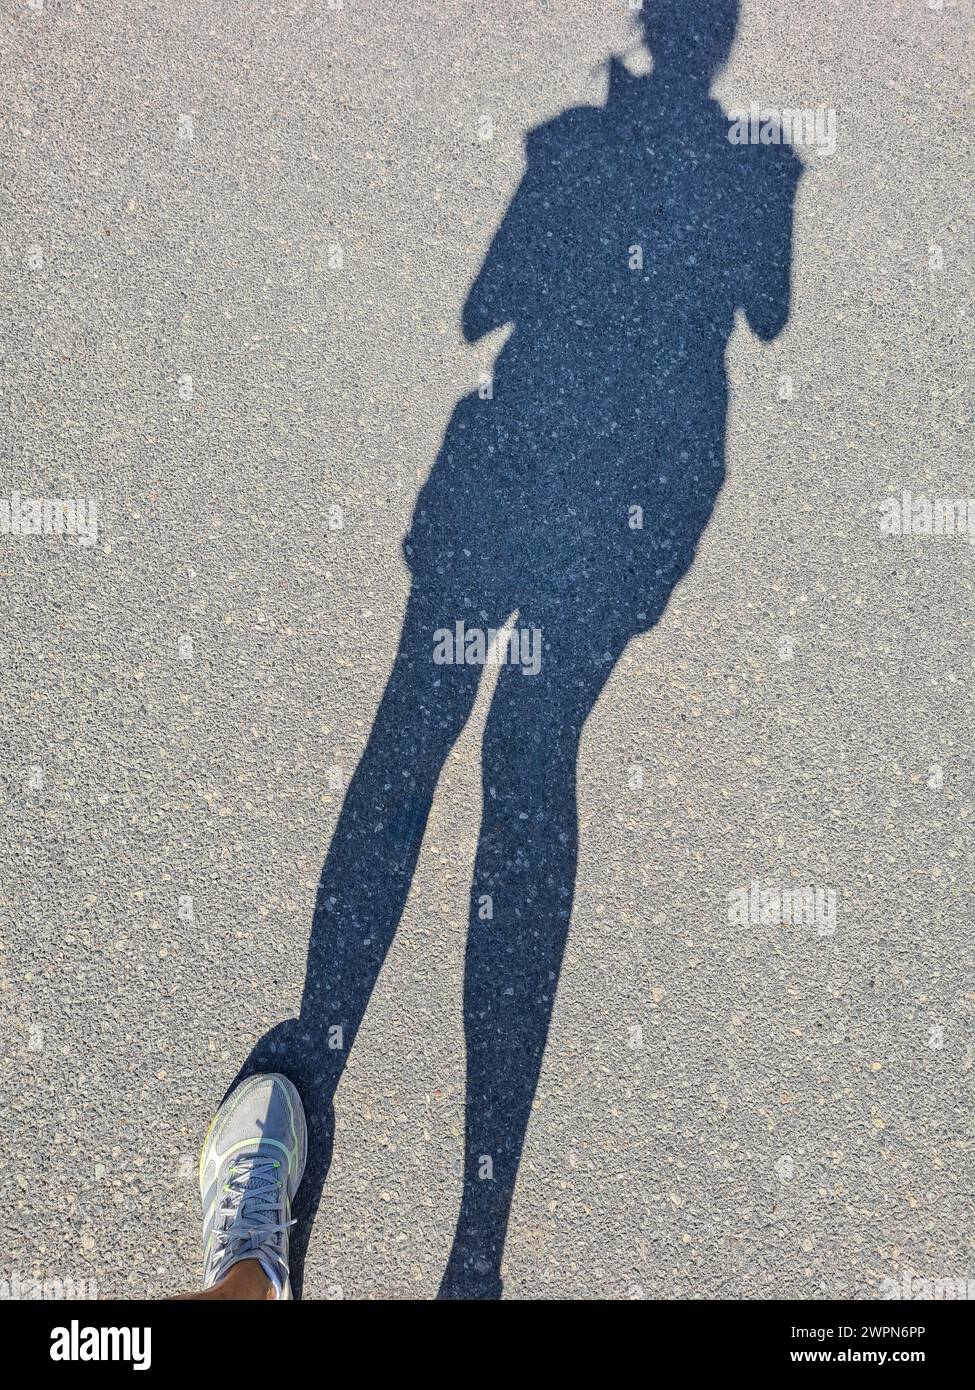 Solo l'ombra di una donna e la sua scarpa sportiva bianca sinistra possono essere viste sulla superficie della strada Foto Stock